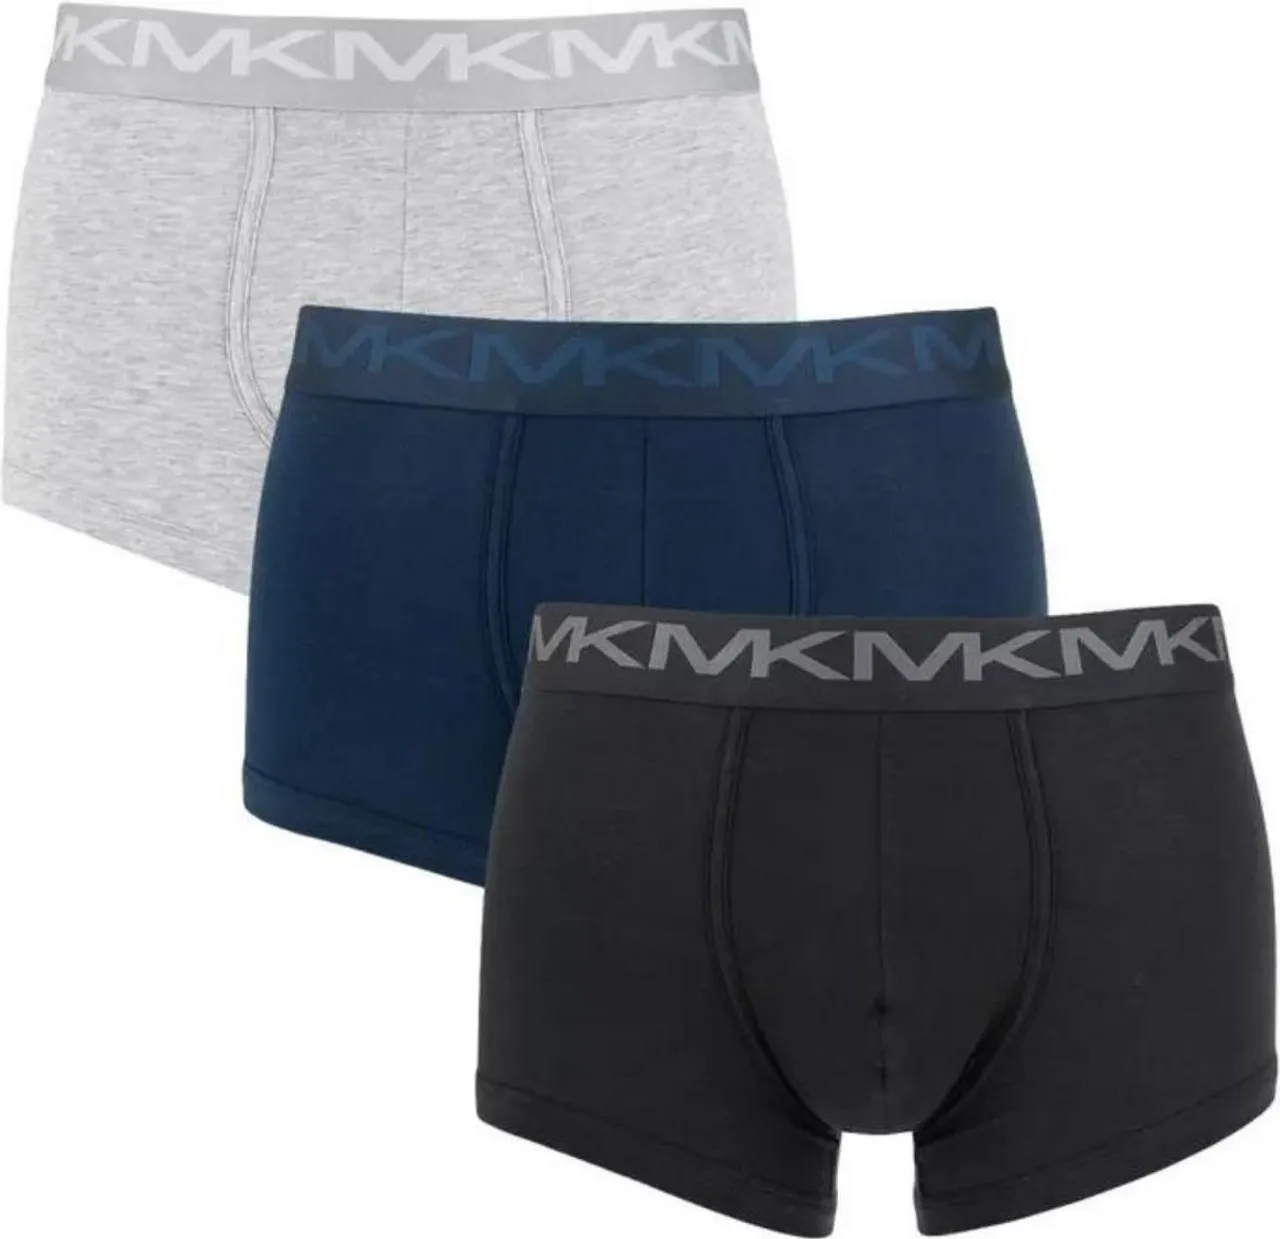 Michael Kors 3P boxers basic multi - XL